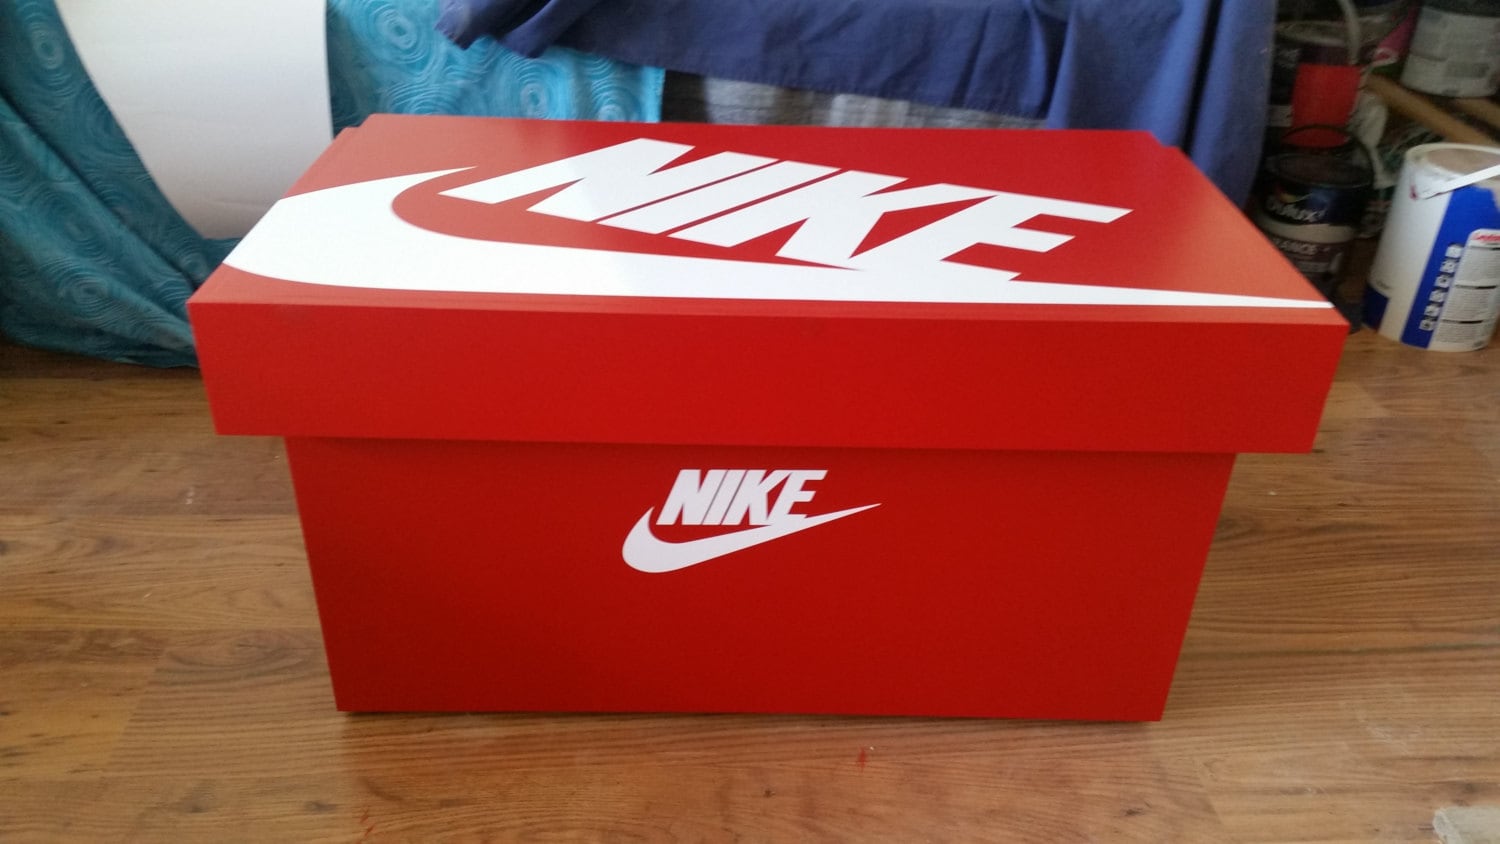 Nike storage box Etsy España